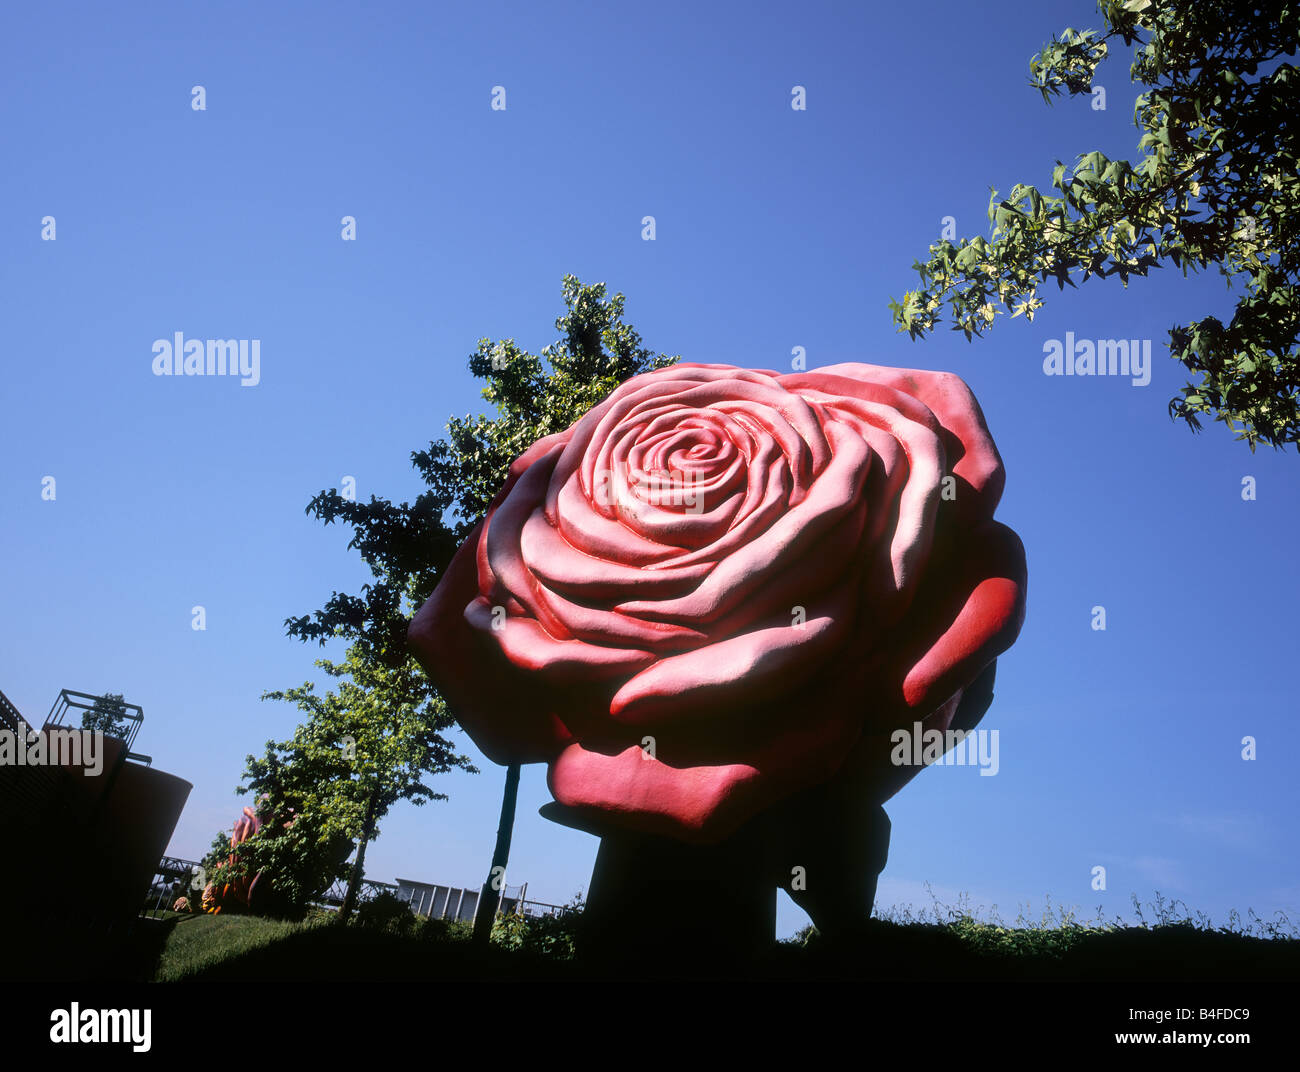 Composizione del gigante rosa artificiale e la fila di alberi, Berlino, Germania. Foto Stock